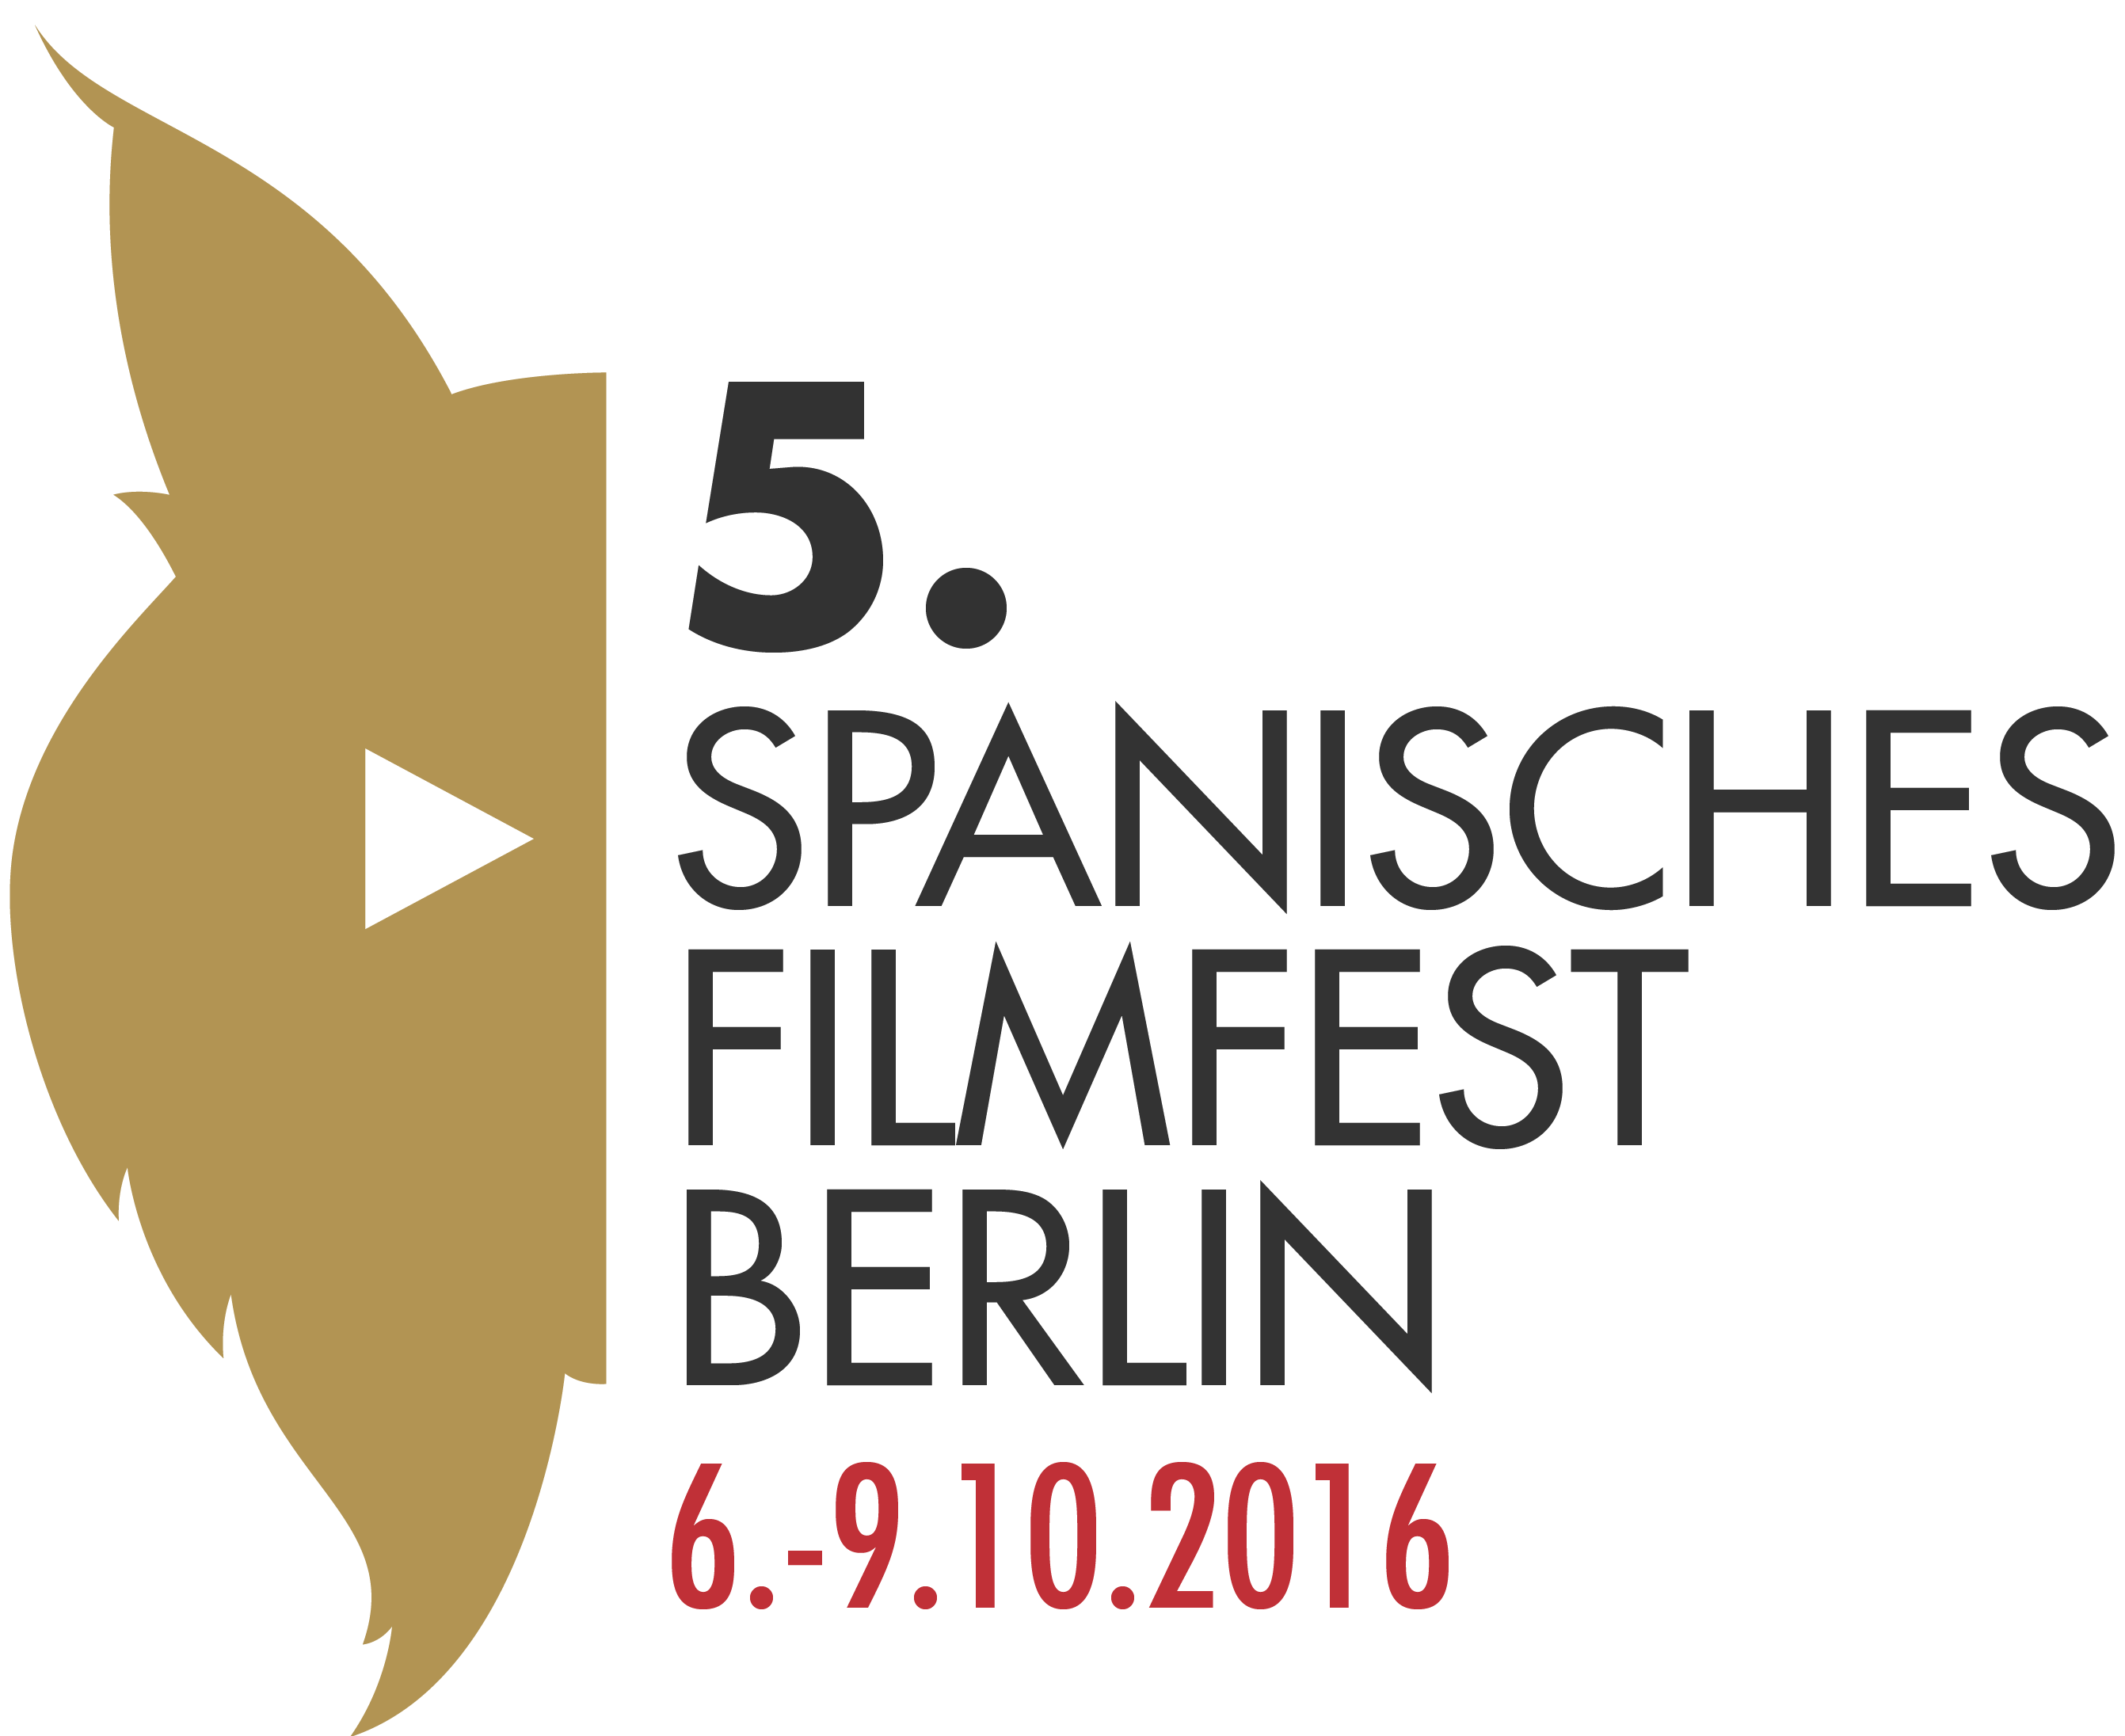 Spanisches Filmfest Berlin